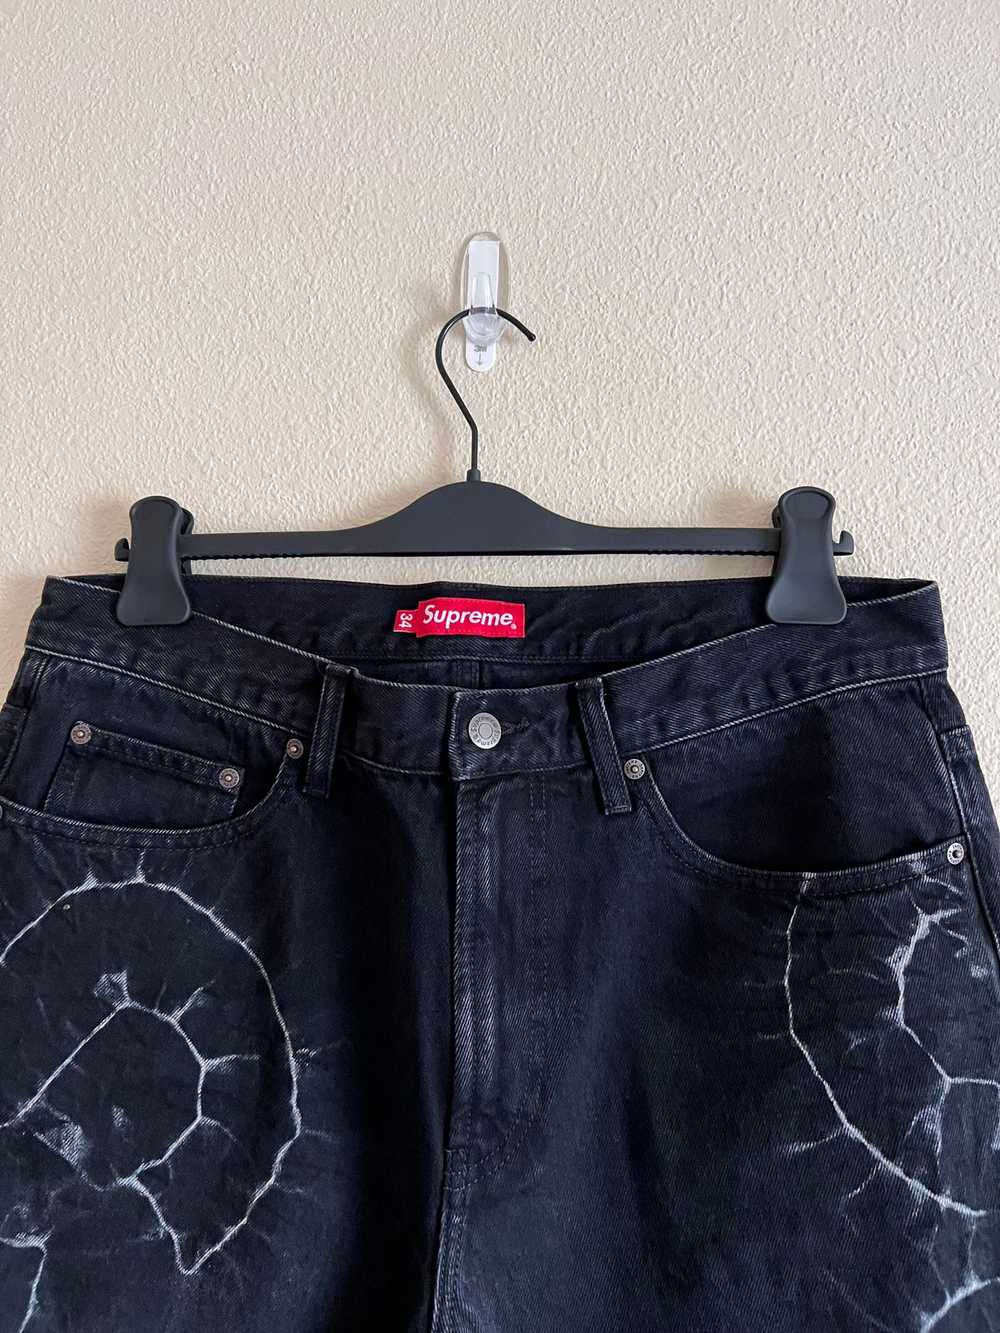 Supreme Supreme Shibori Loose Fit Denim Jeans in … - image 2